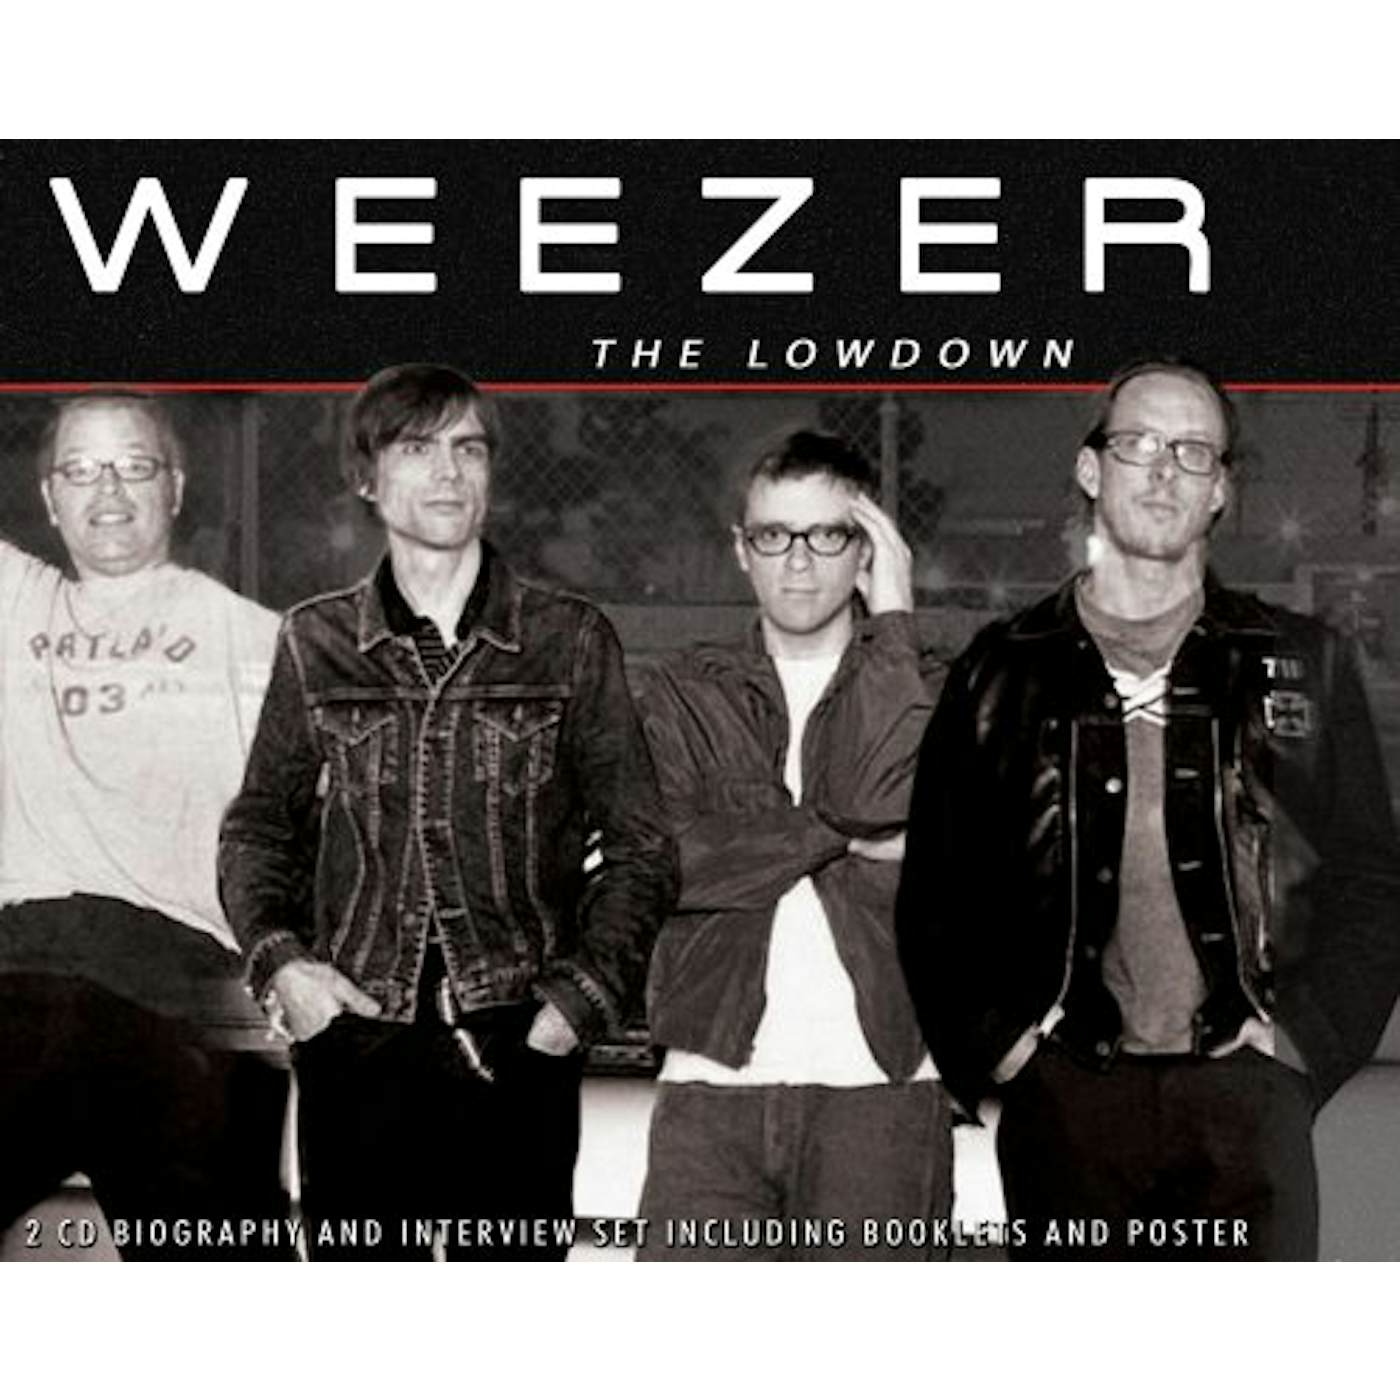 Weezer LOWDOWN UNAUTHORIZED CD